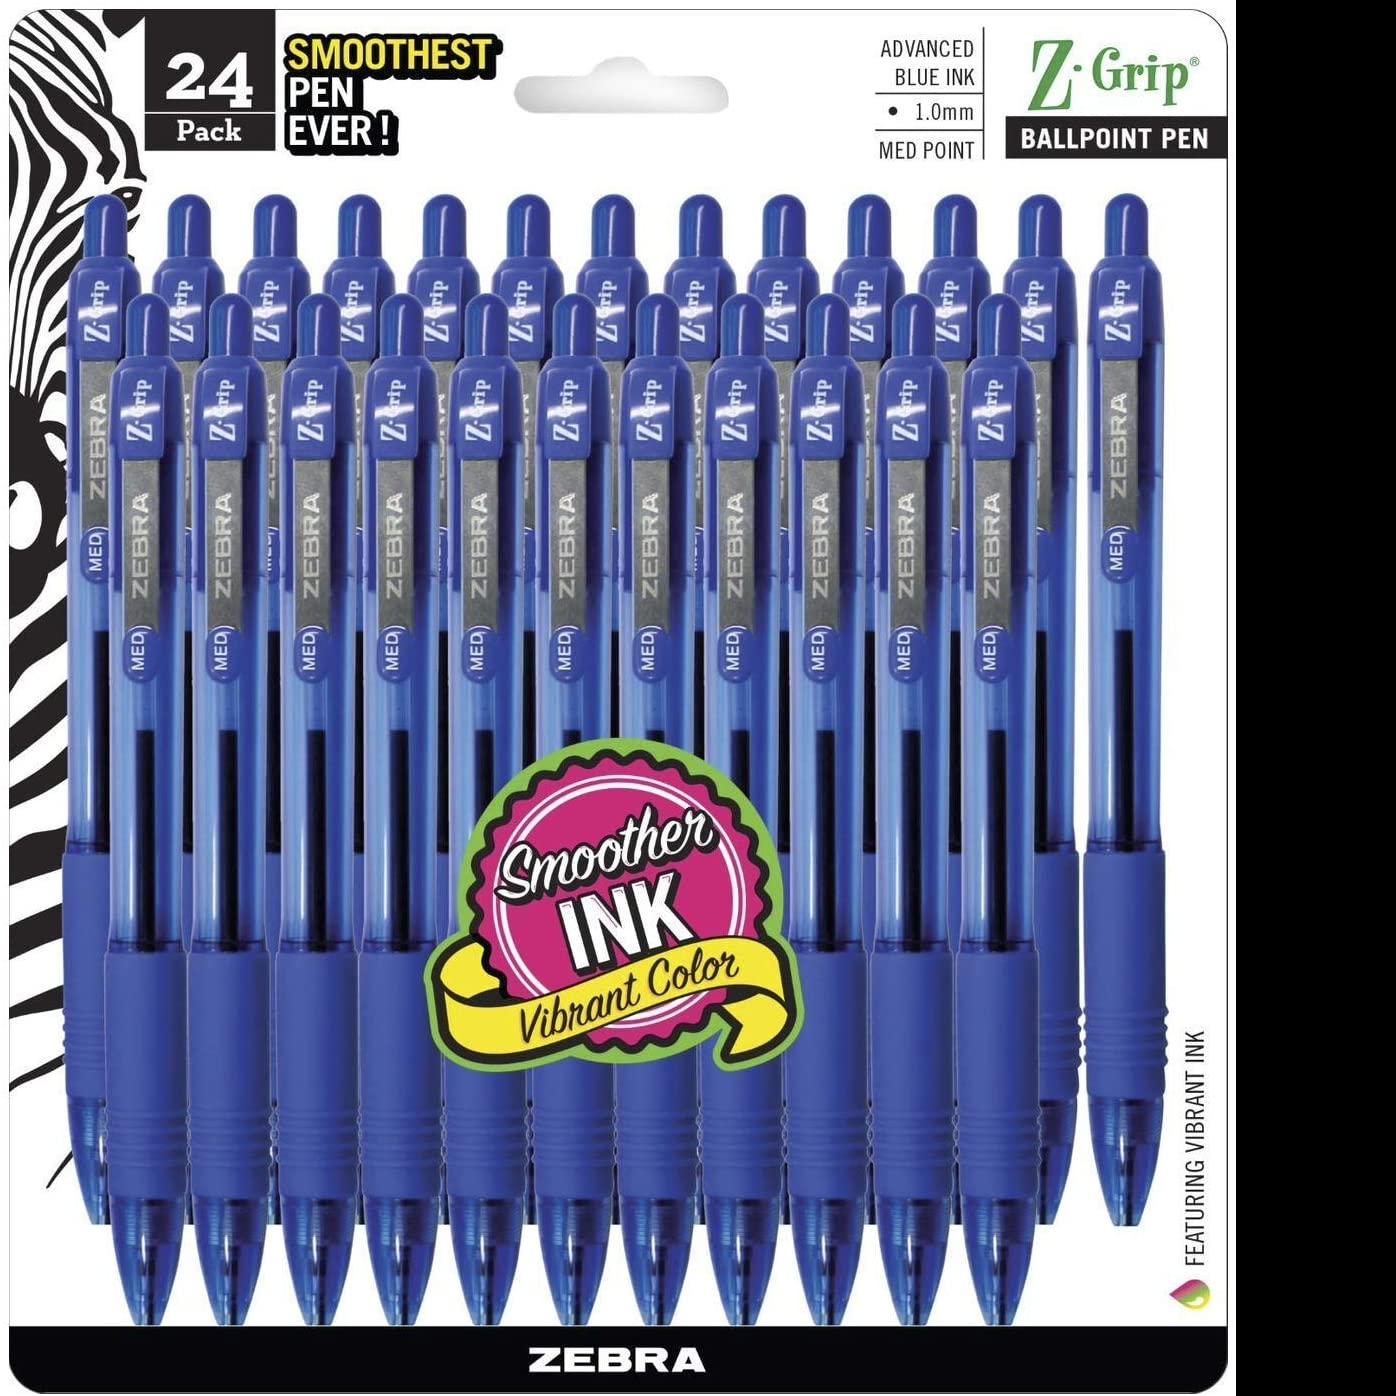 24 Zebra Pen Z-Grip Retractable Ballpoint Pens for $5.22 Shipped